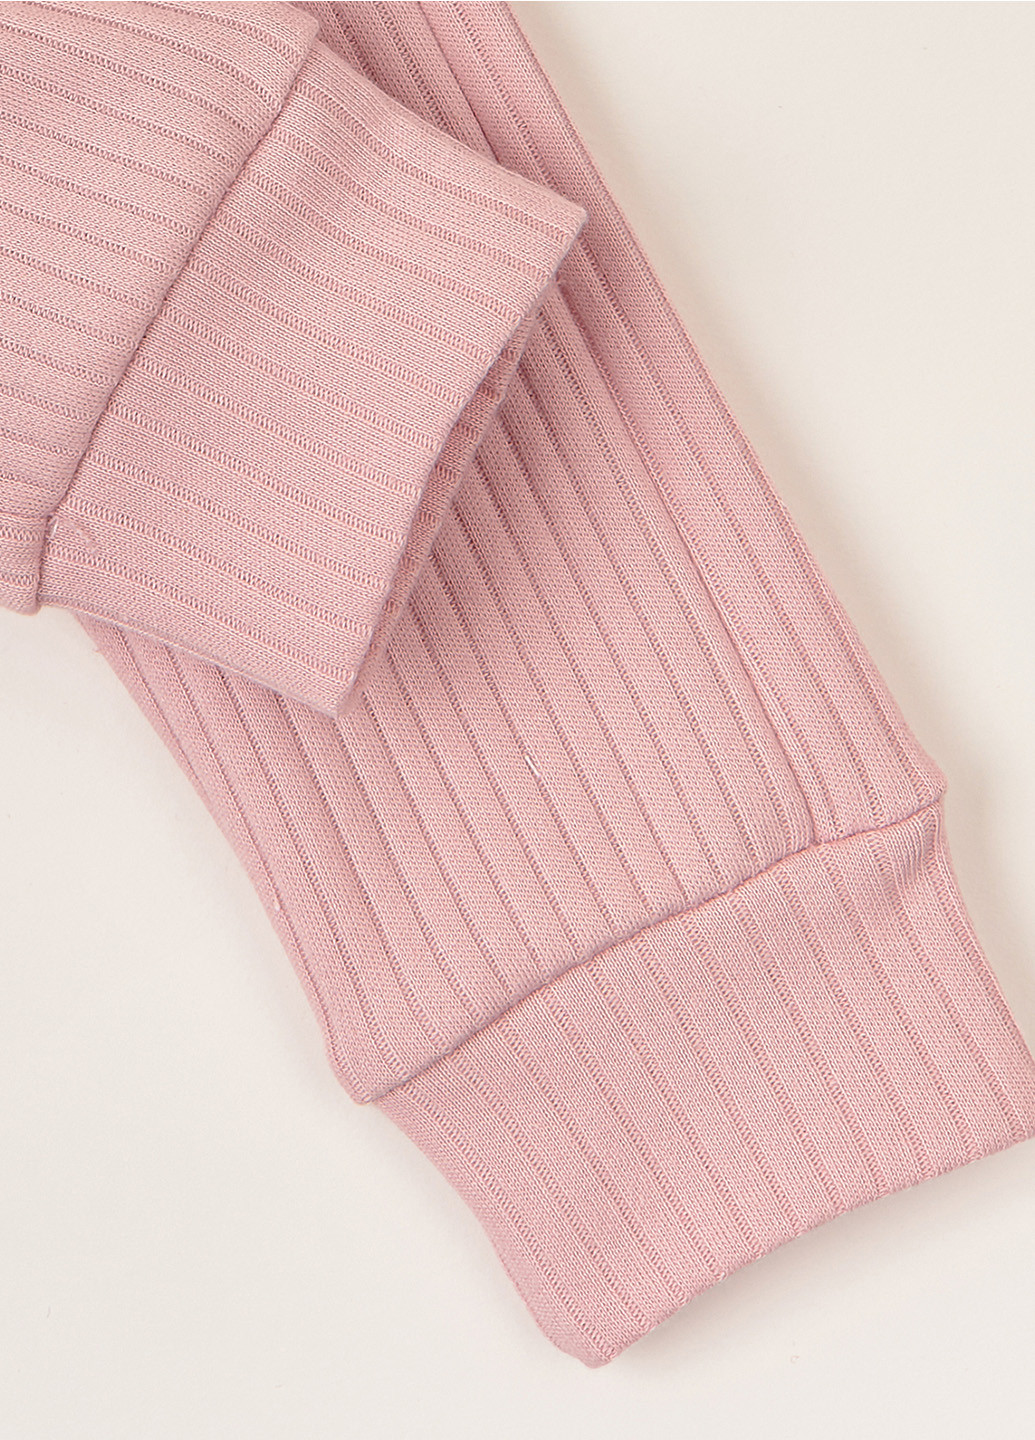 Розовый демисезонный комплект полоска розовая пудра (боди с длинным рукавом и штаны) KRAKO